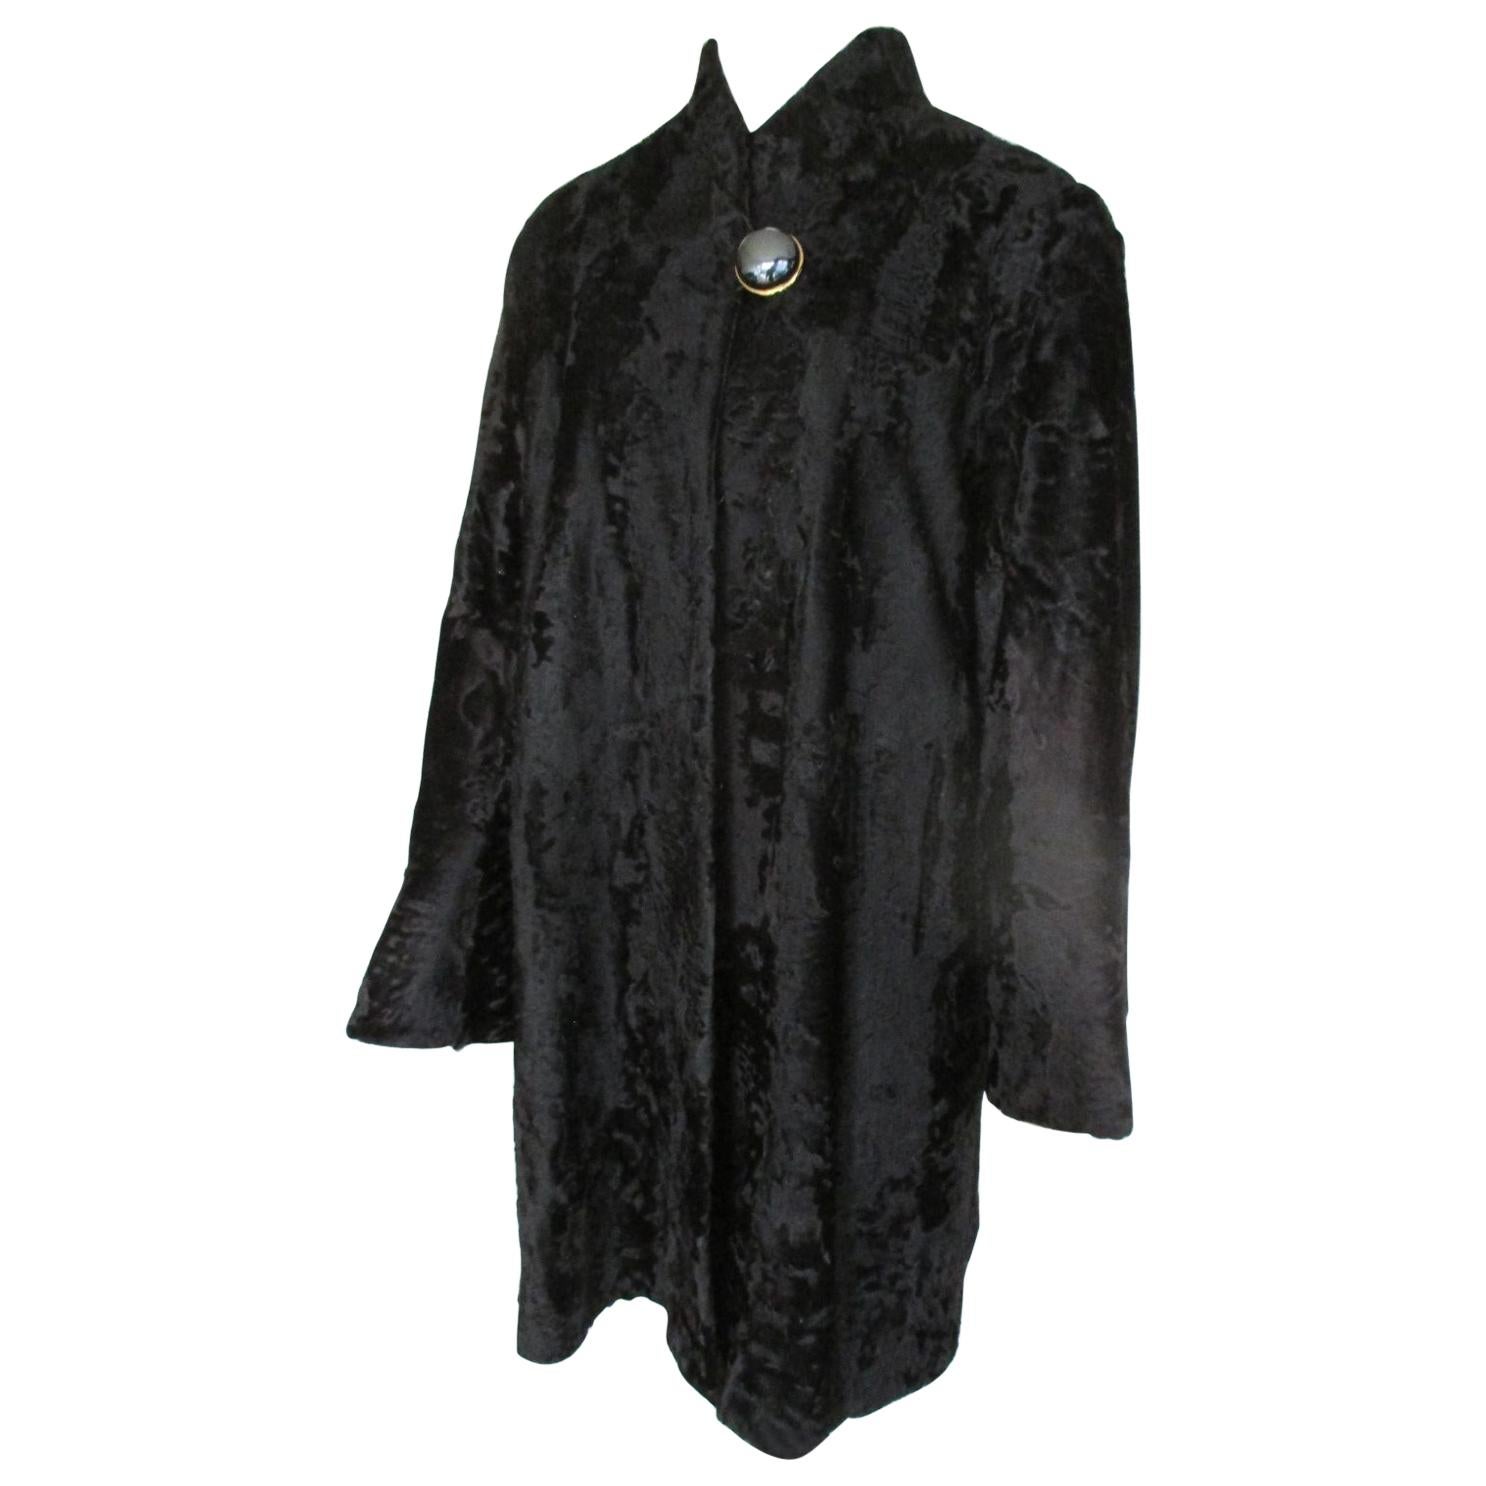  Black Broadtail Lamb Fur Coat For Sale